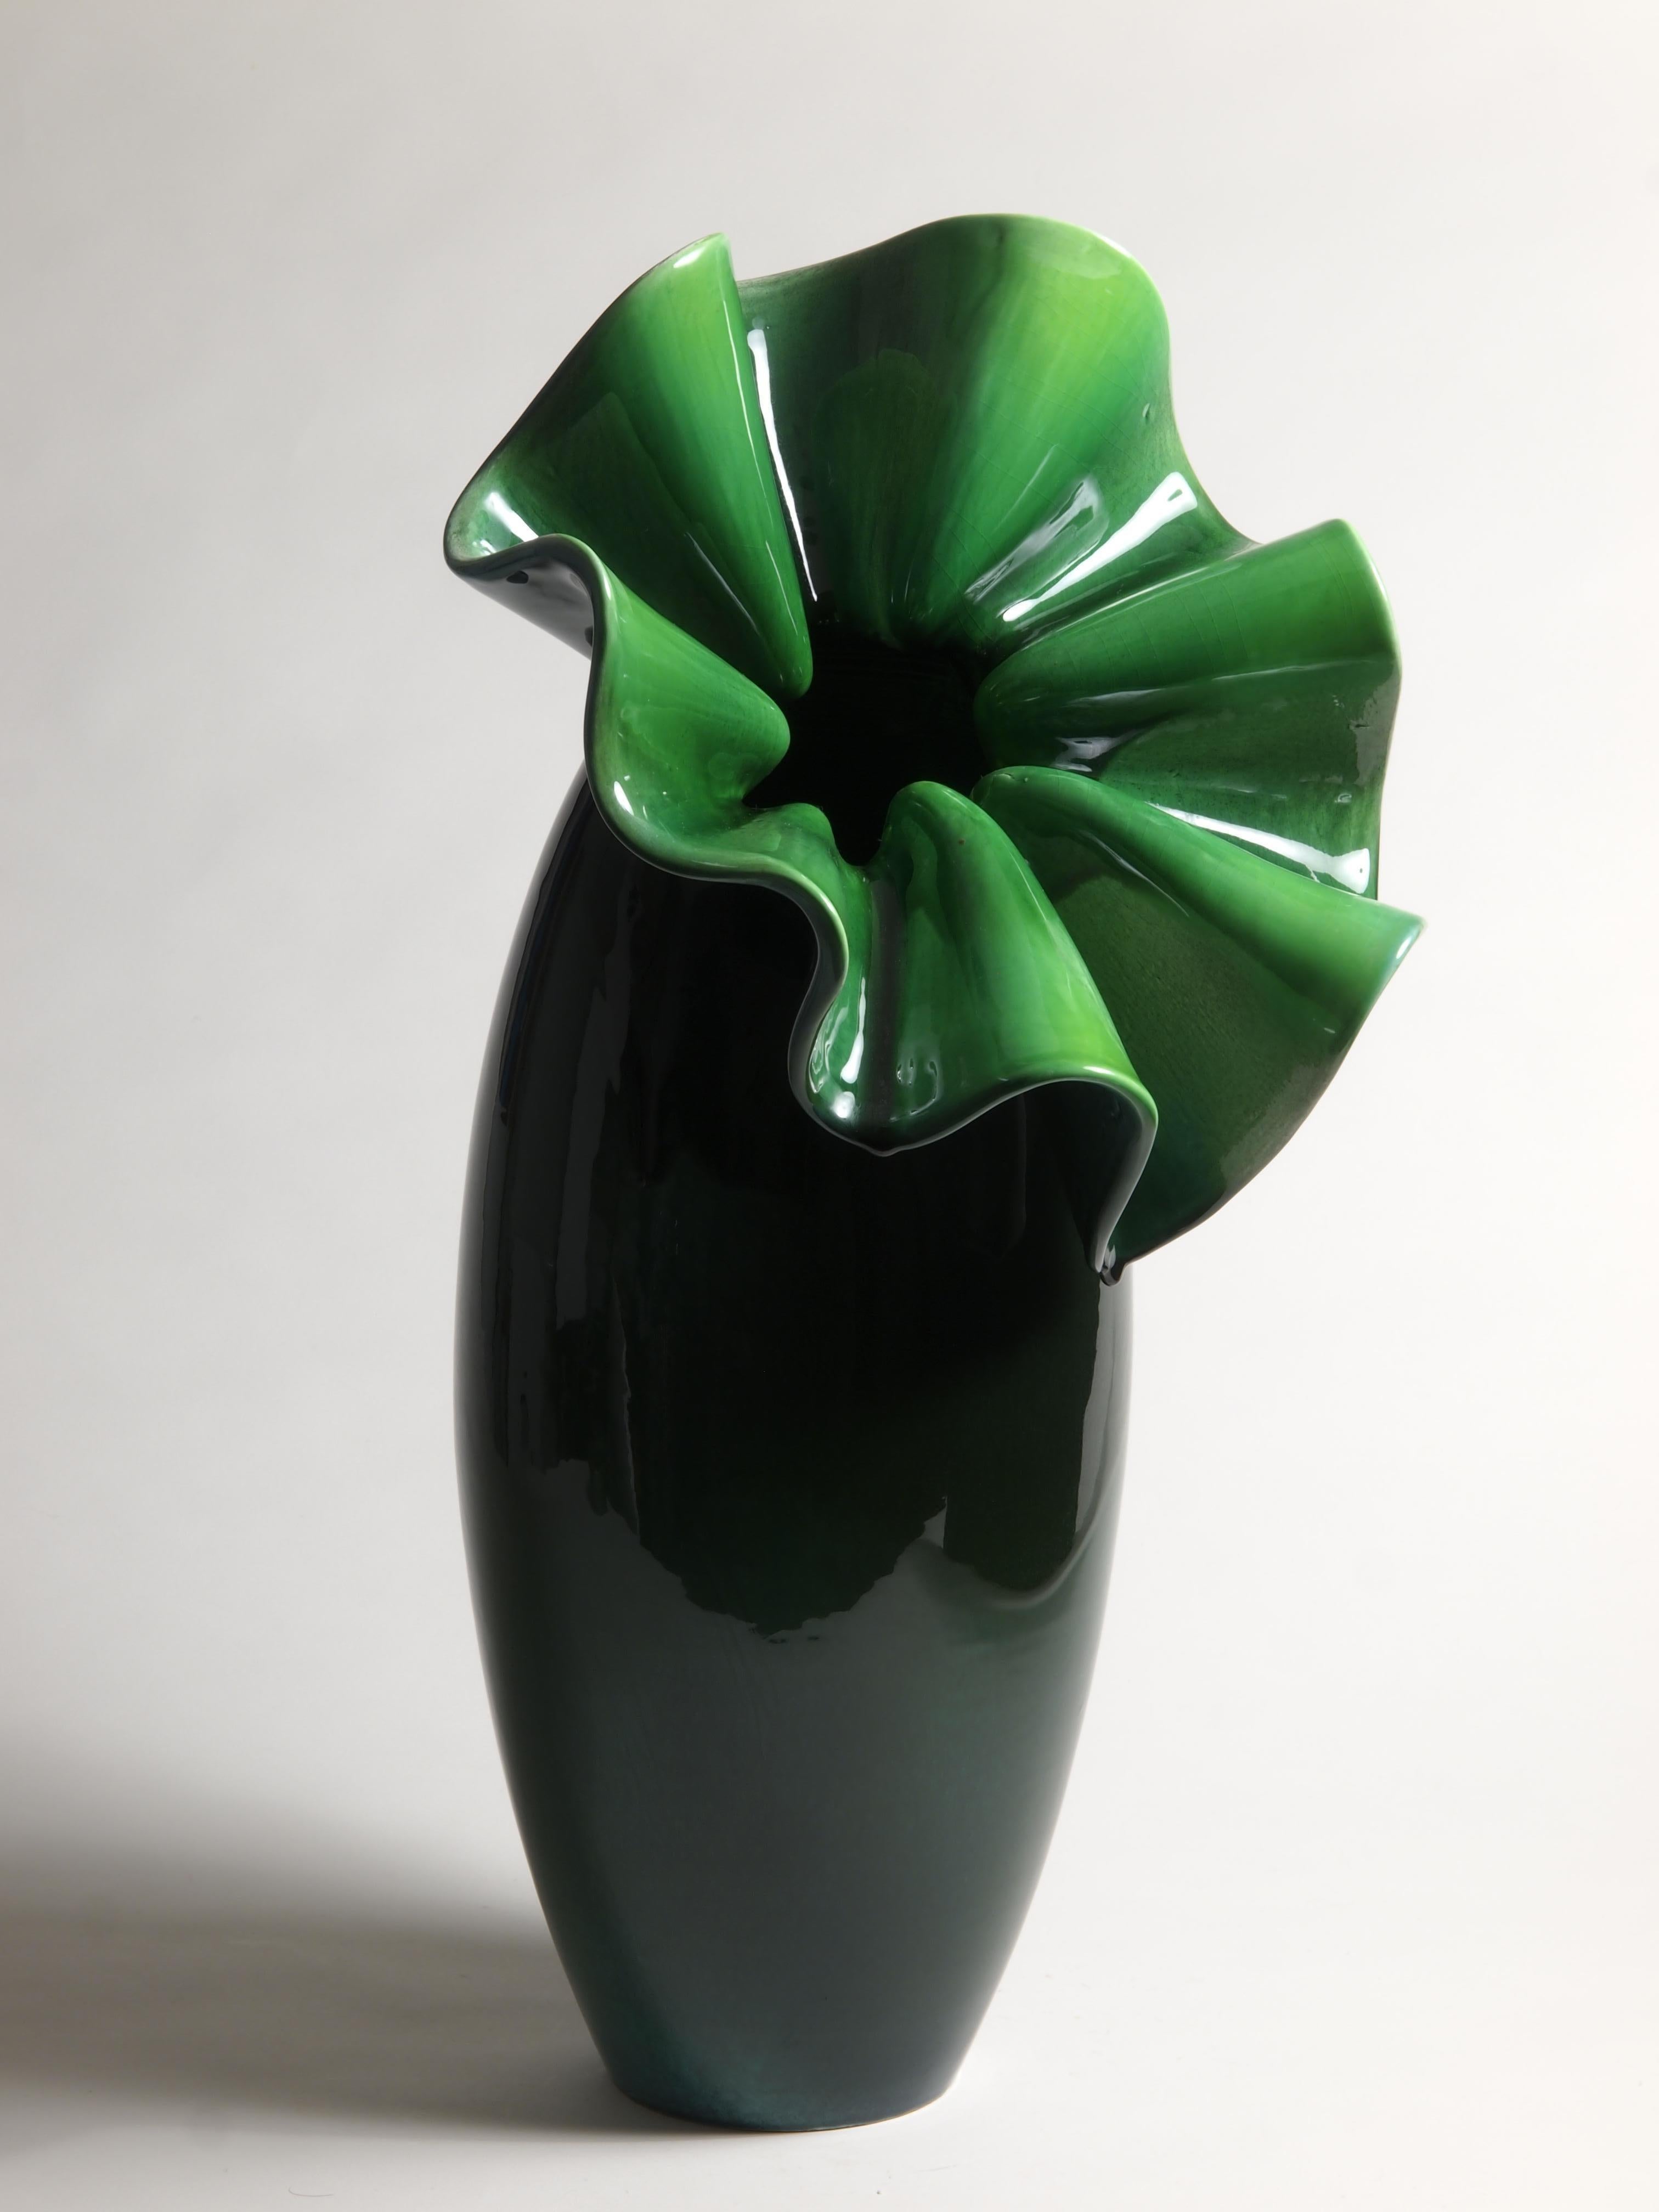 Sculptural vase by Antonietta Mazzotti Emaldi, 2018, Glazed earthenware (majolica), entirely handmade, unique piece. 

Antonietta Mazzotti (Faenza, Italy 1950) attended the Istituto d’Arte per la Ceramica in Faenza and opened her first workshop in